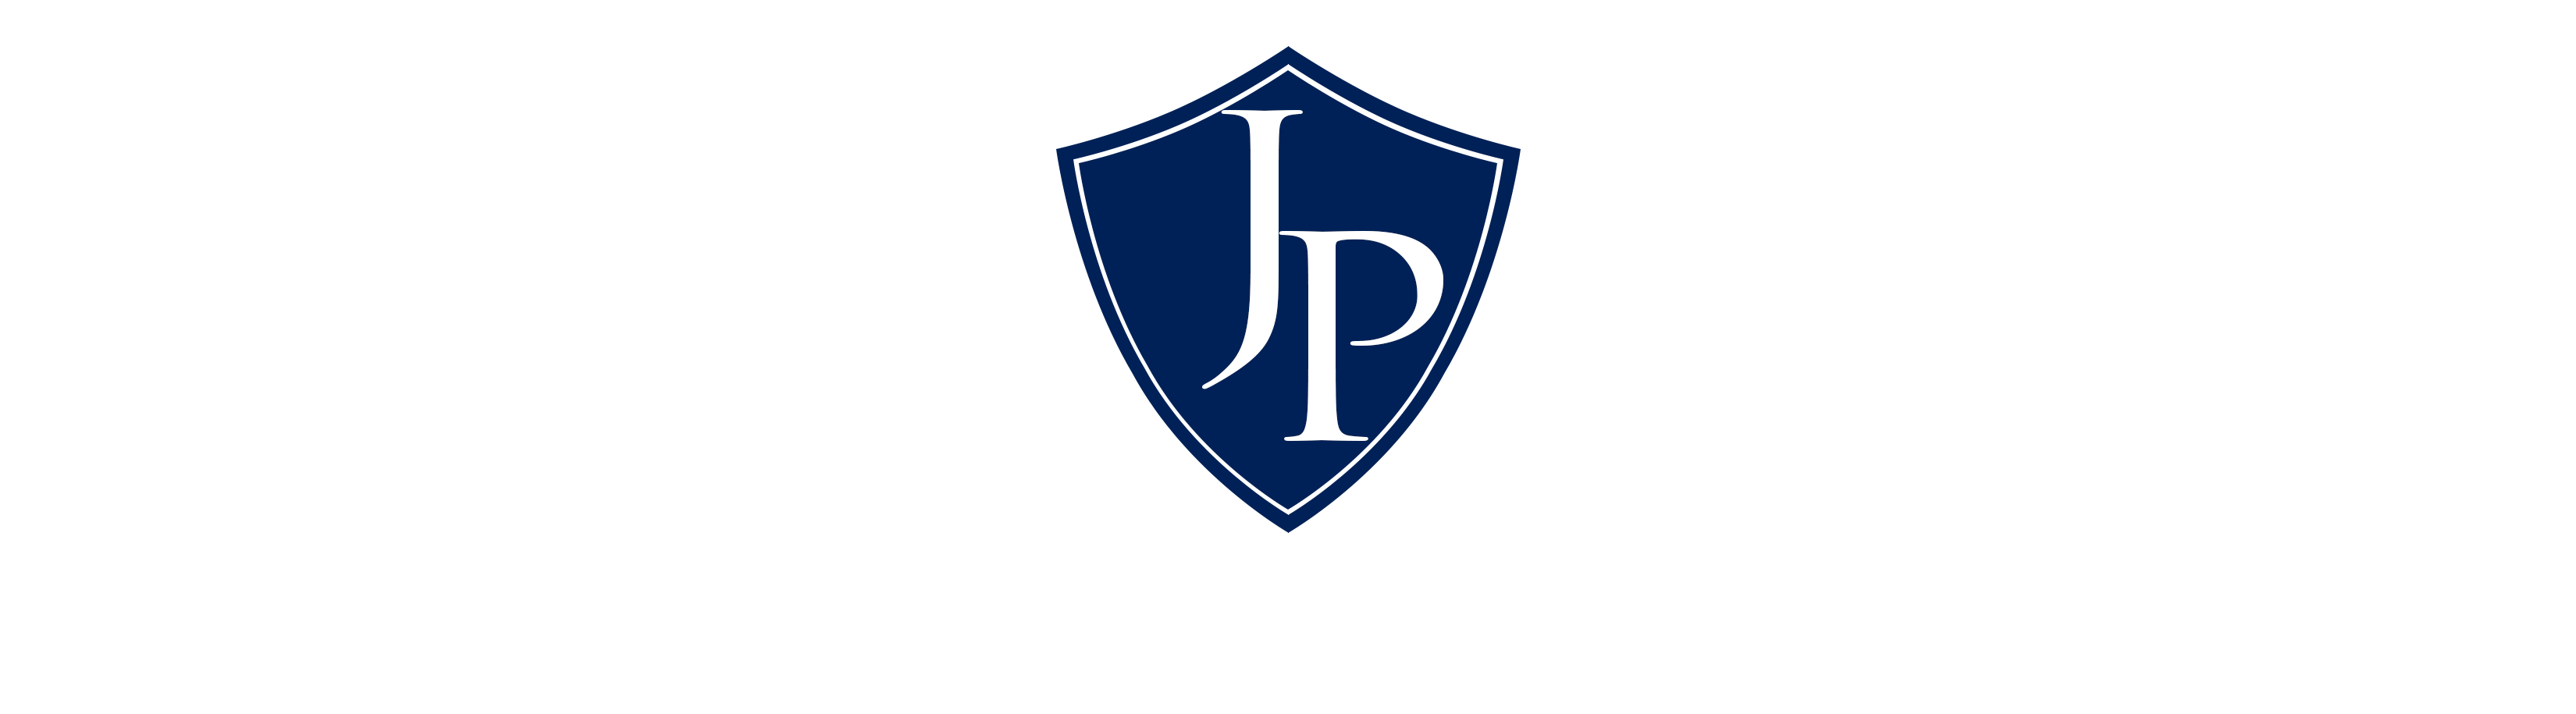 Jose R. Perez, P.A. Logo